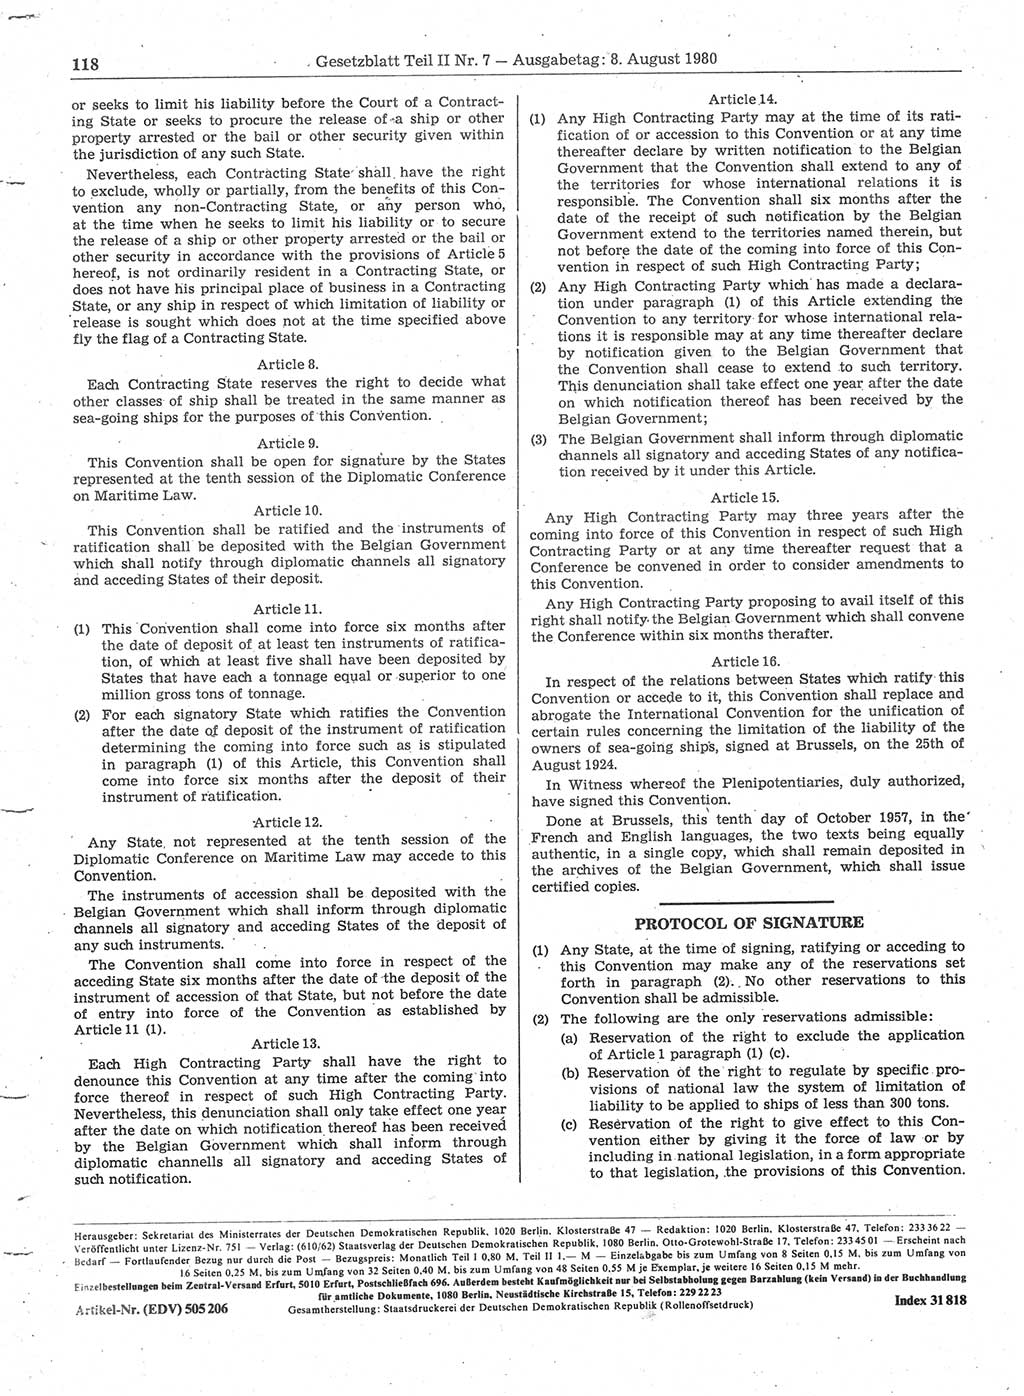 Gesetzblatt (GBl.) der Deutschen Demokratischen Republik (DDR) Teil ⅠⅠ 1980, Seite 118 (GBl. DDR ⅠⅠ 1980, S. 118)